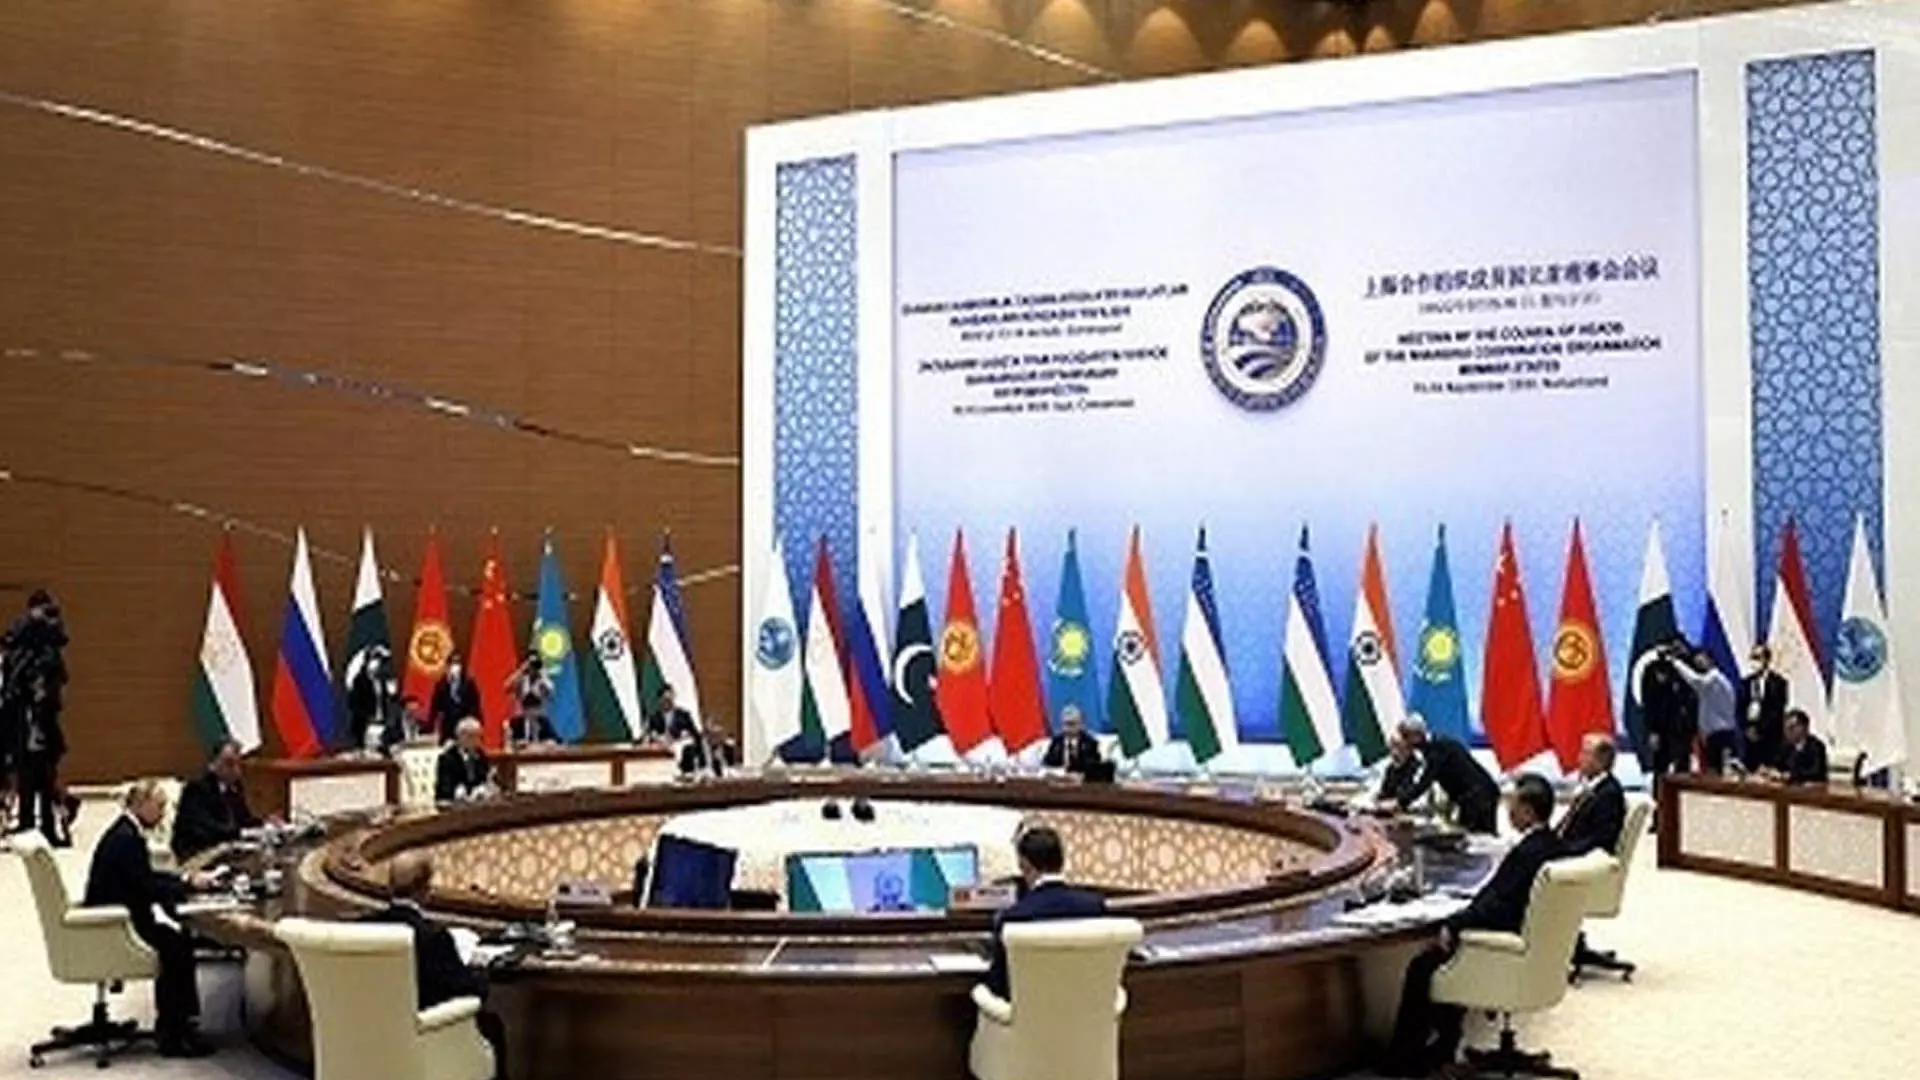 Delhi News: एससीओ शिखर सम्मेलन में अफगानिस्तान, यूक्रेन संघर्ष की स्थिति पर चर्चा